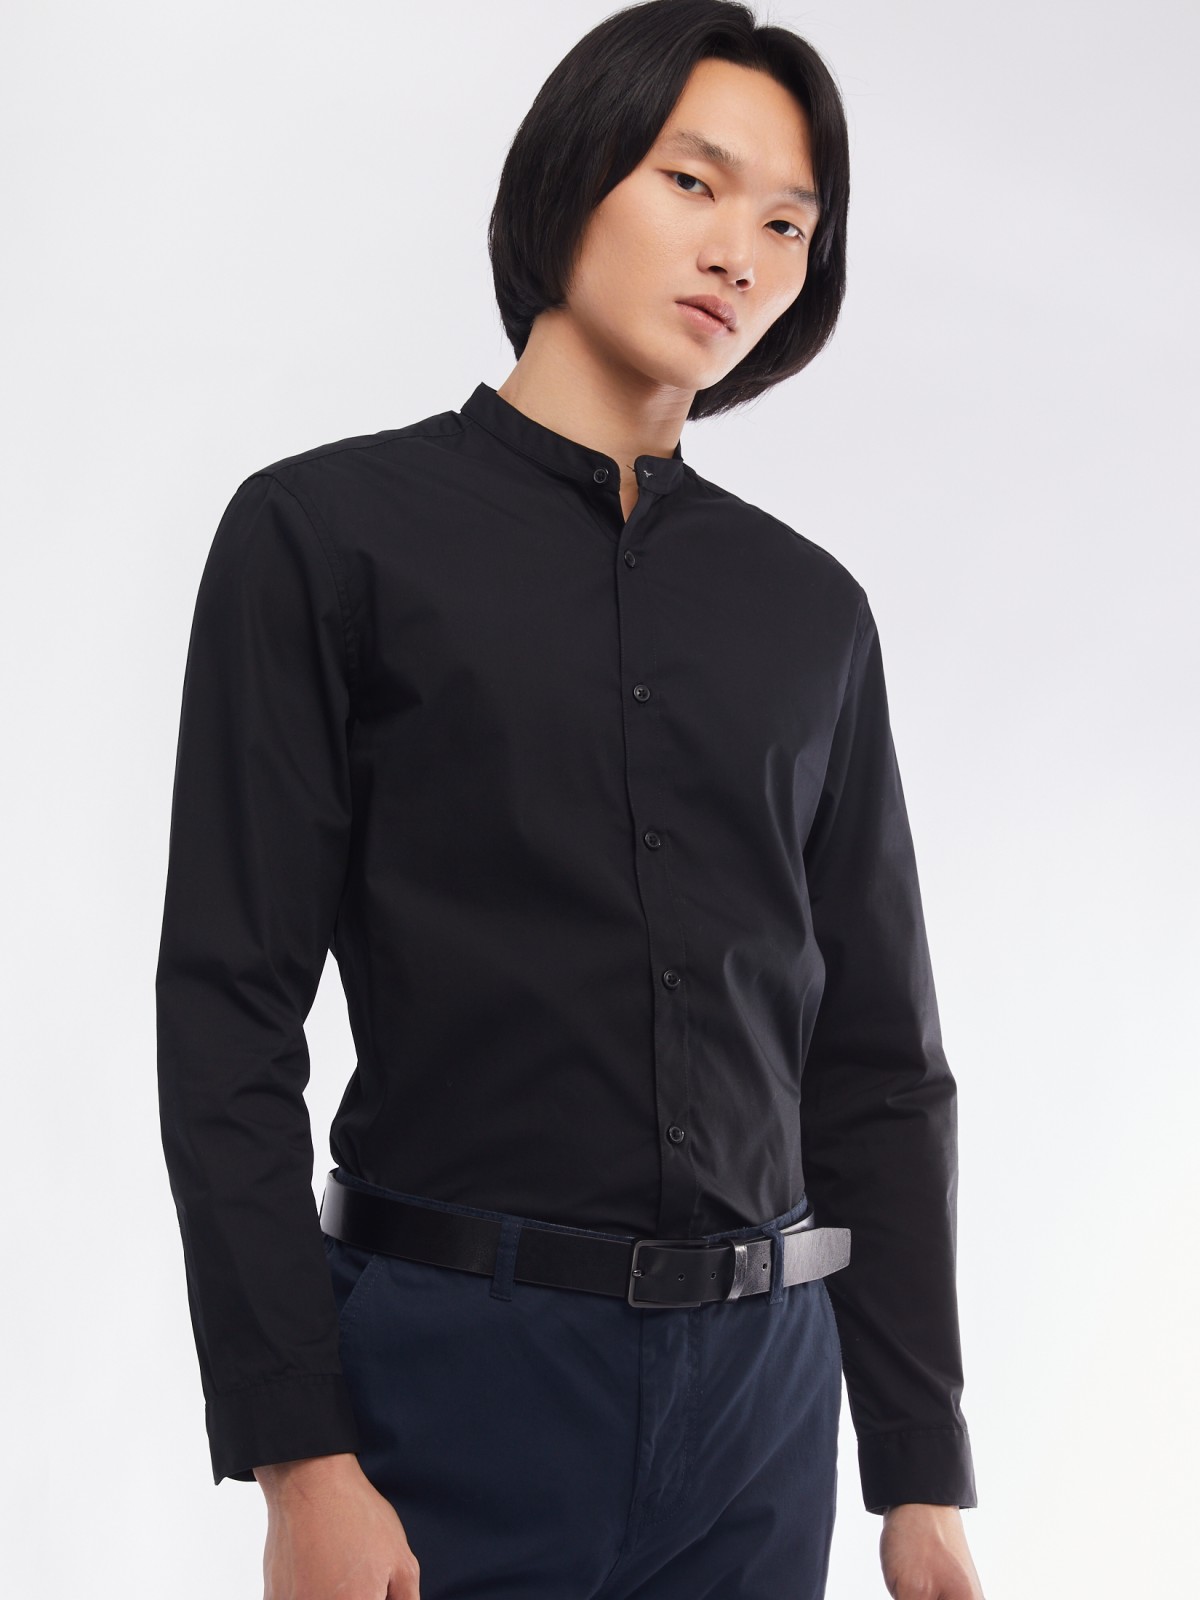 Офисная рубашка с воротником-стойкой и длинным рукавом zolla 01411217W072, цвет черный, размер S - фото 1